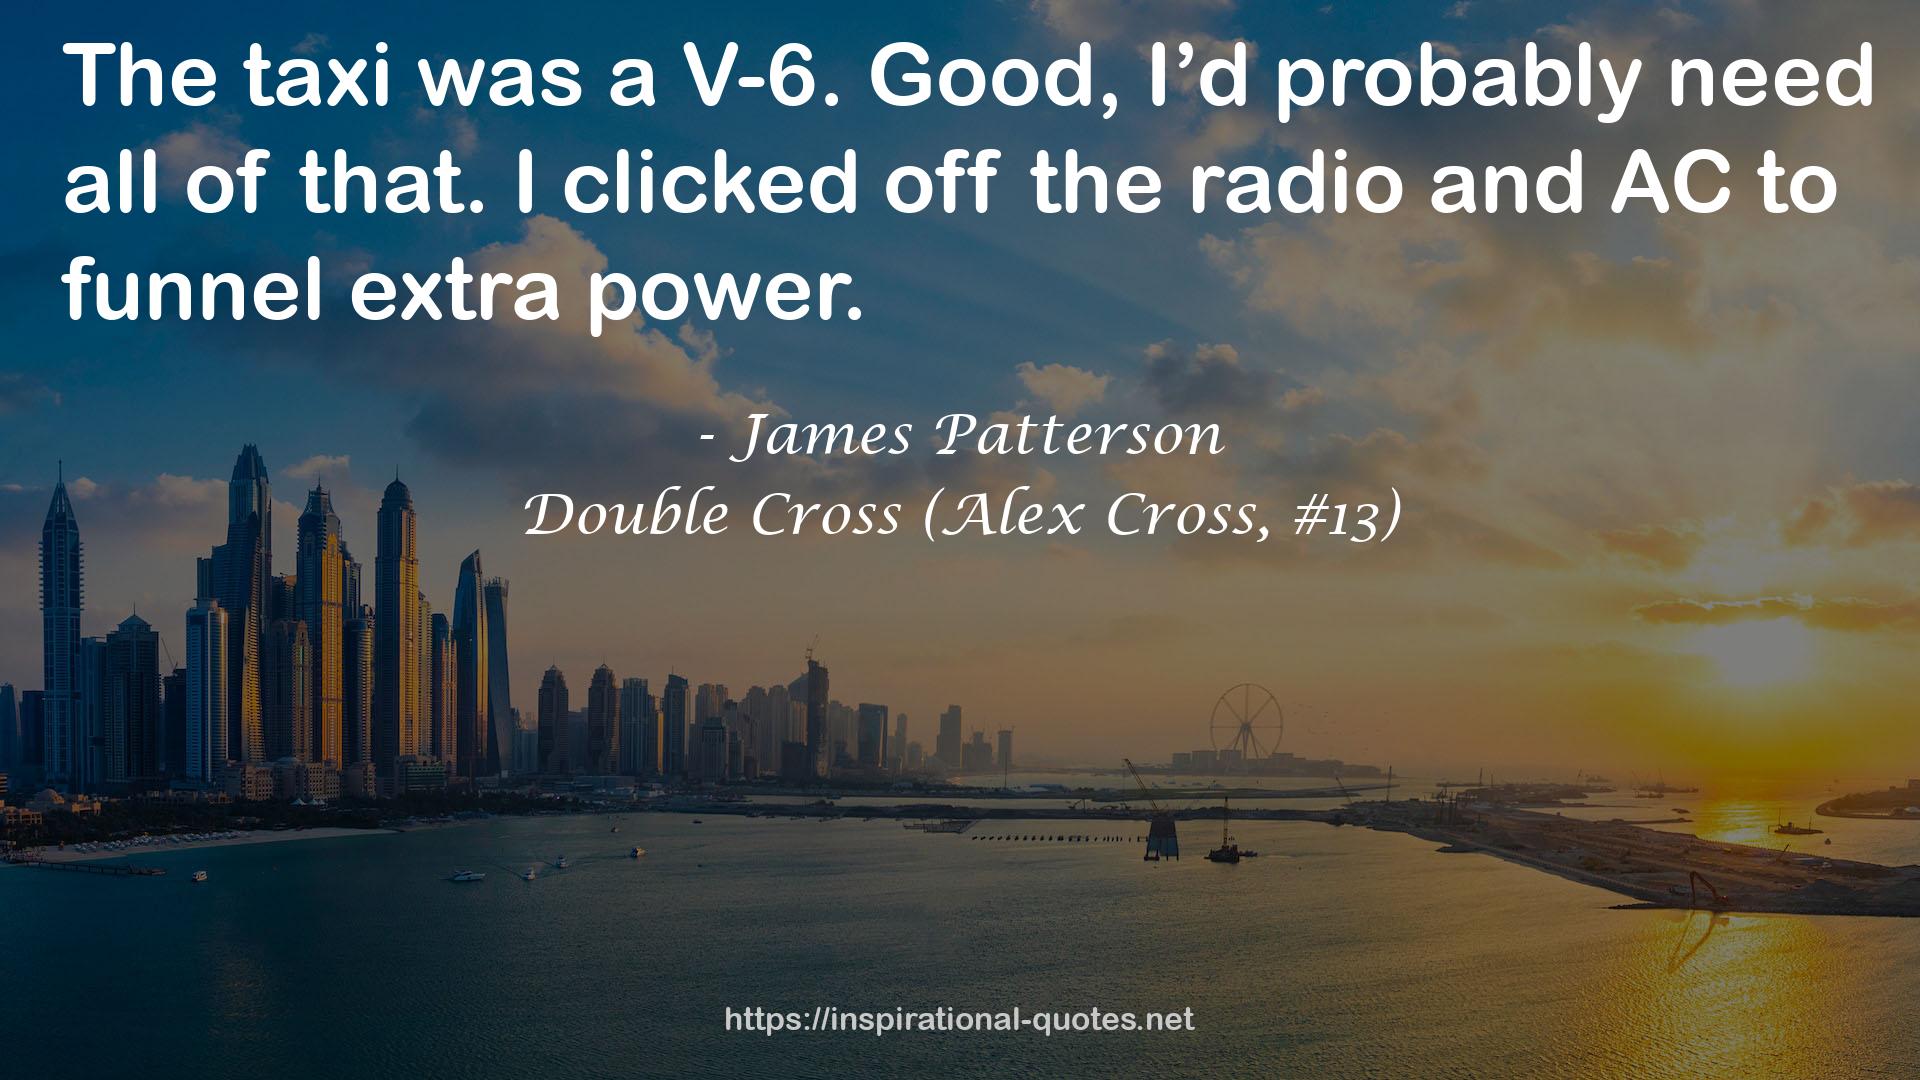 Double Cross (Alex Cross, #13) QUOTES